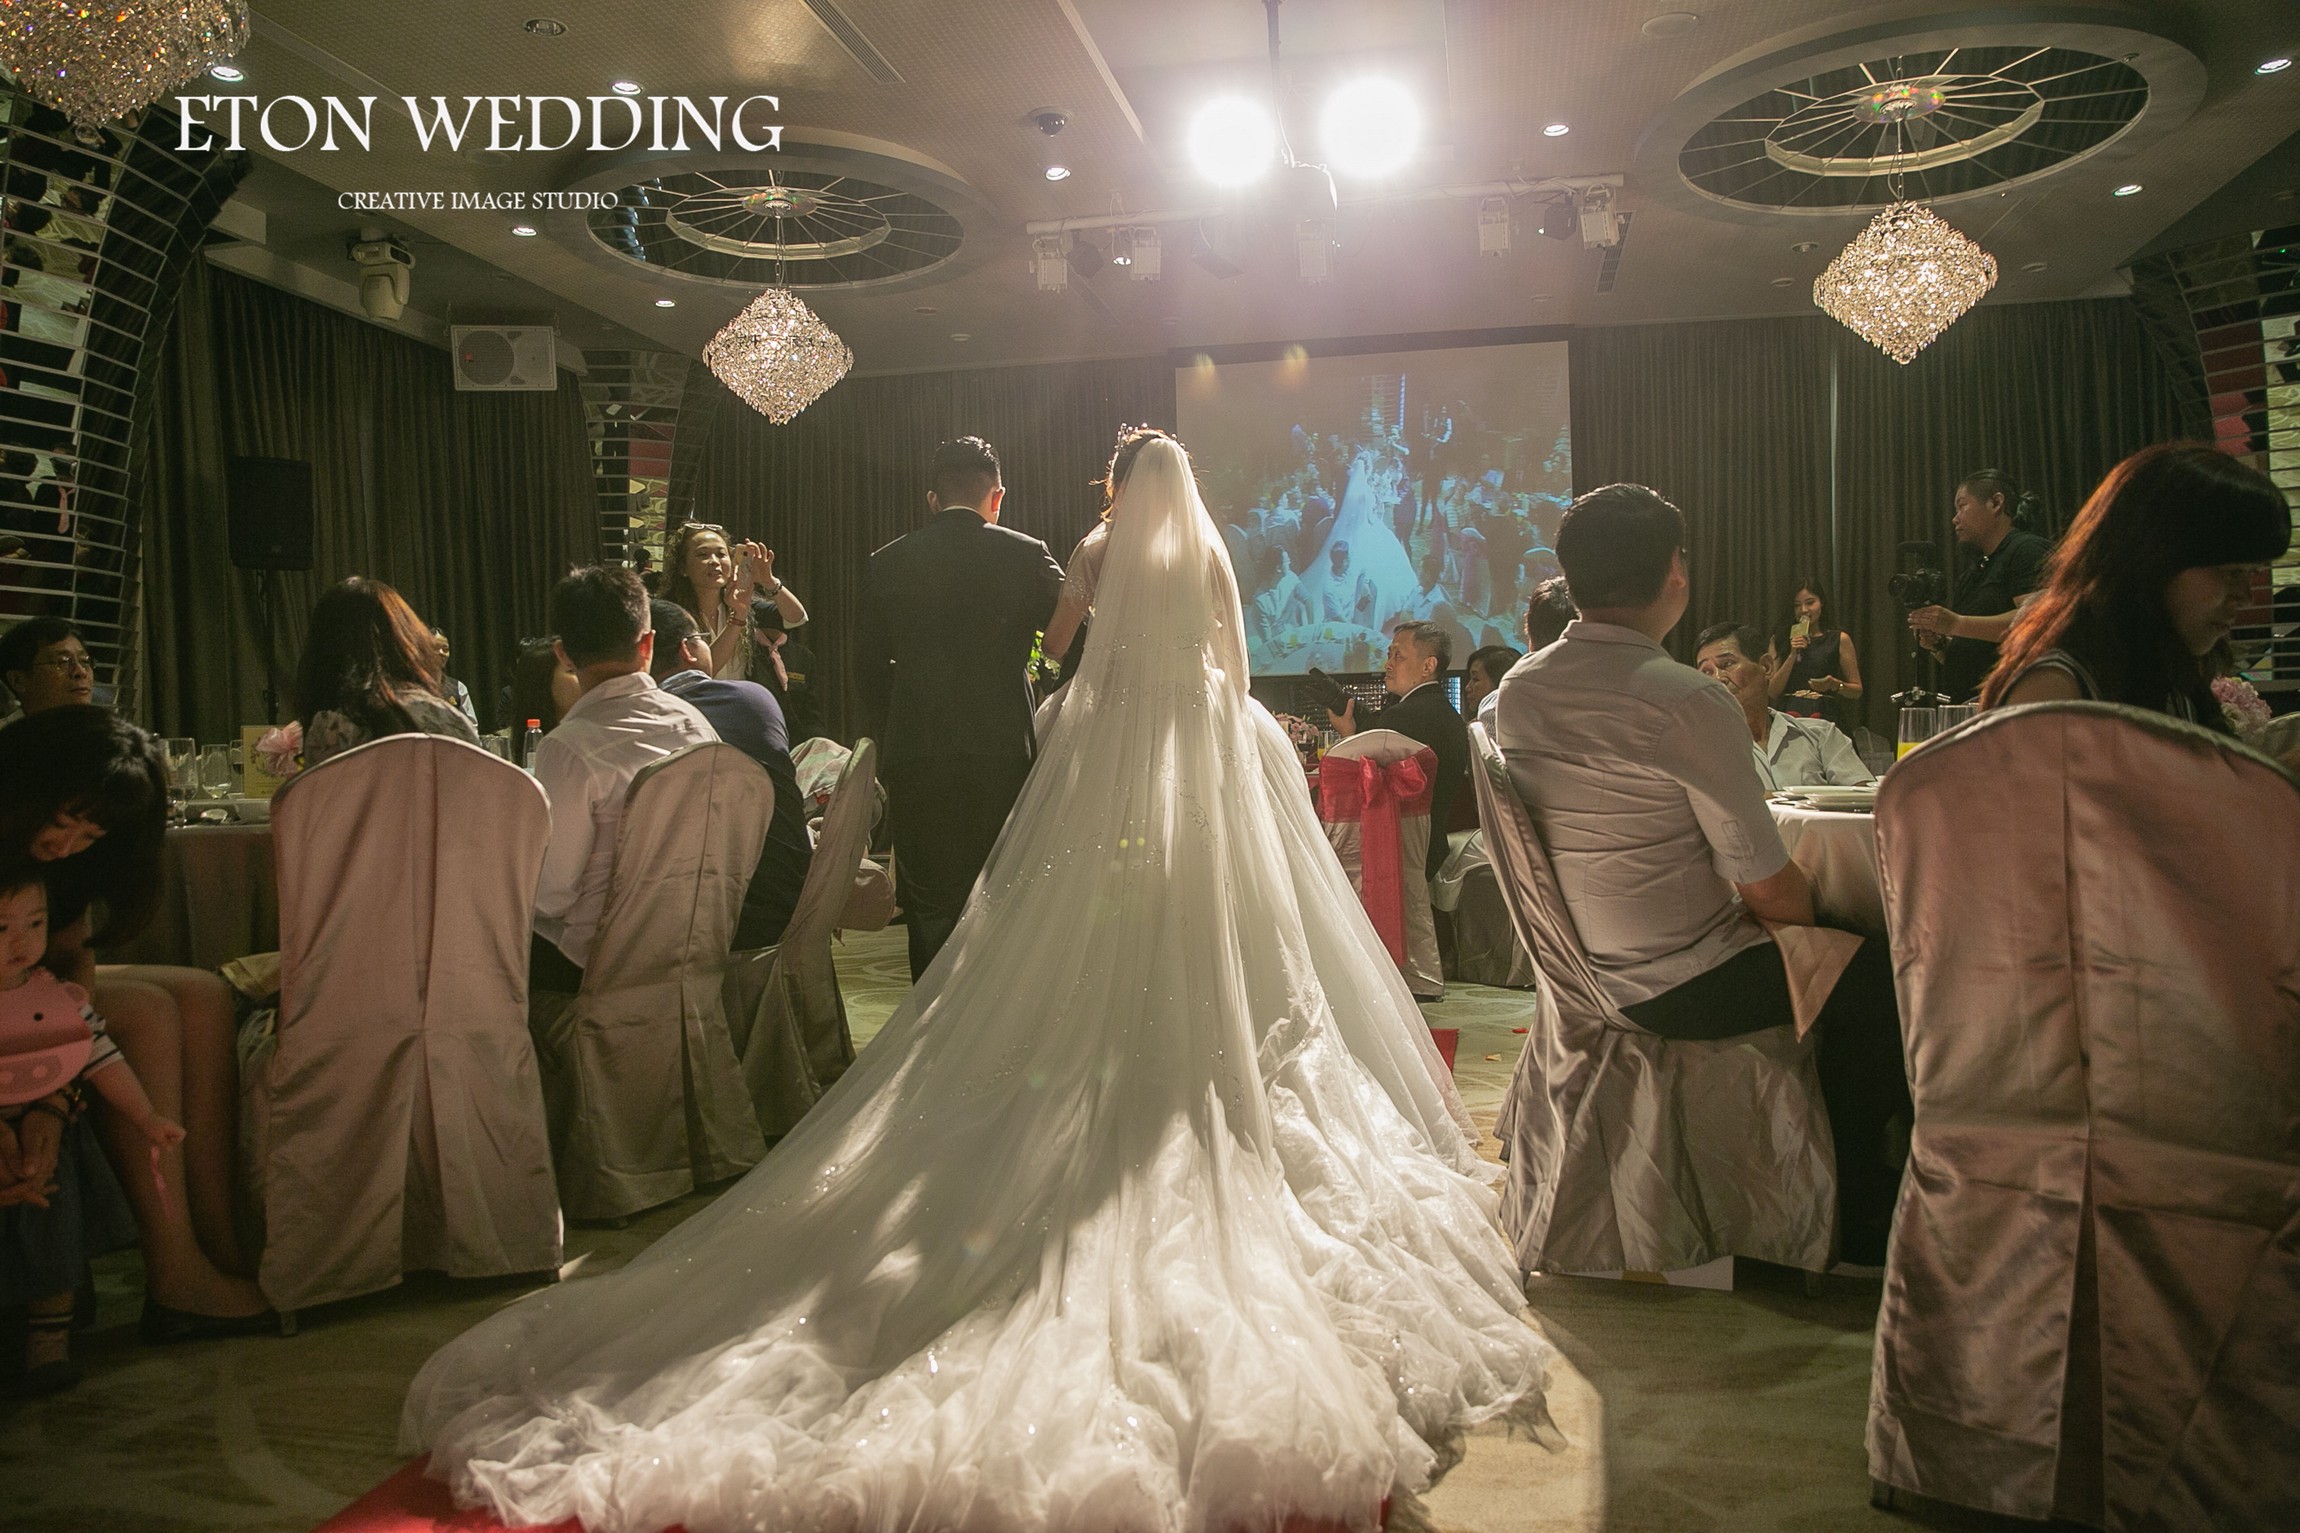 婚禮錄影 台南,台南 婚錄推薦,台南 婚錄價格,台南 拍婚禮錄影